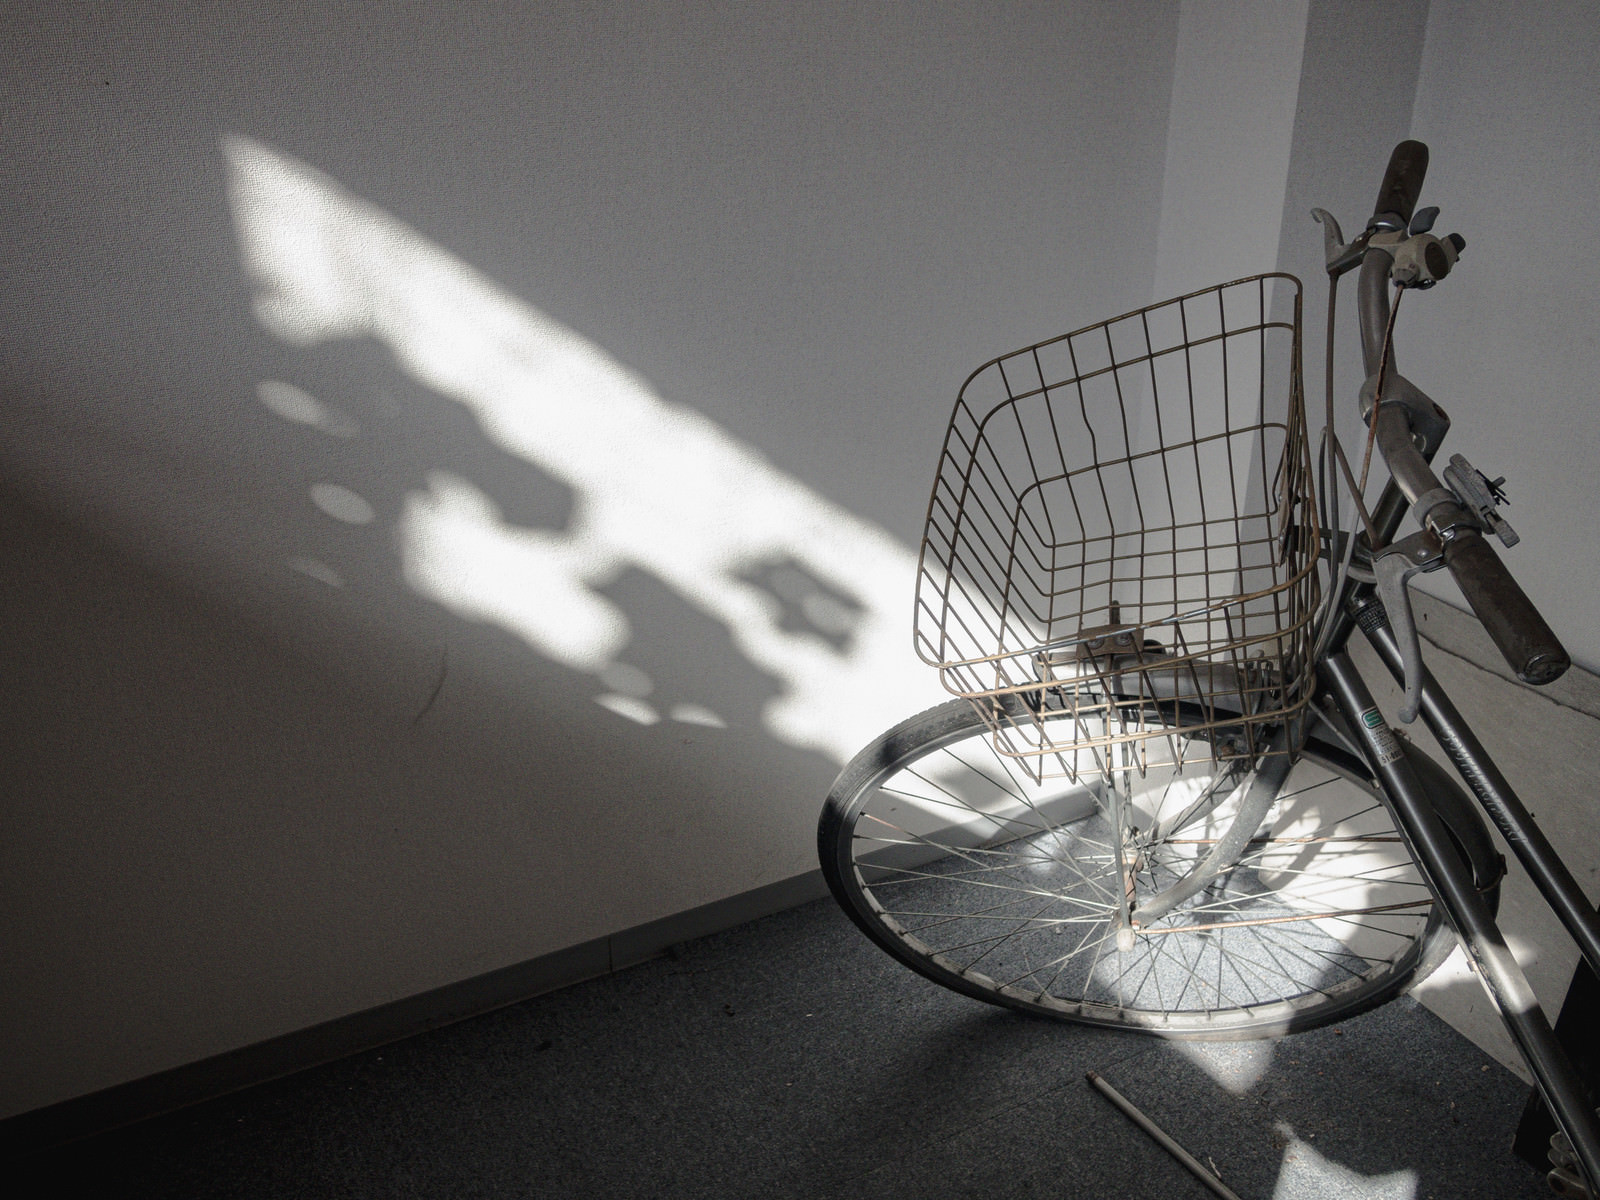 「室内に置かれた自転車と陽 | フリー素材のぱくたそ」の写真